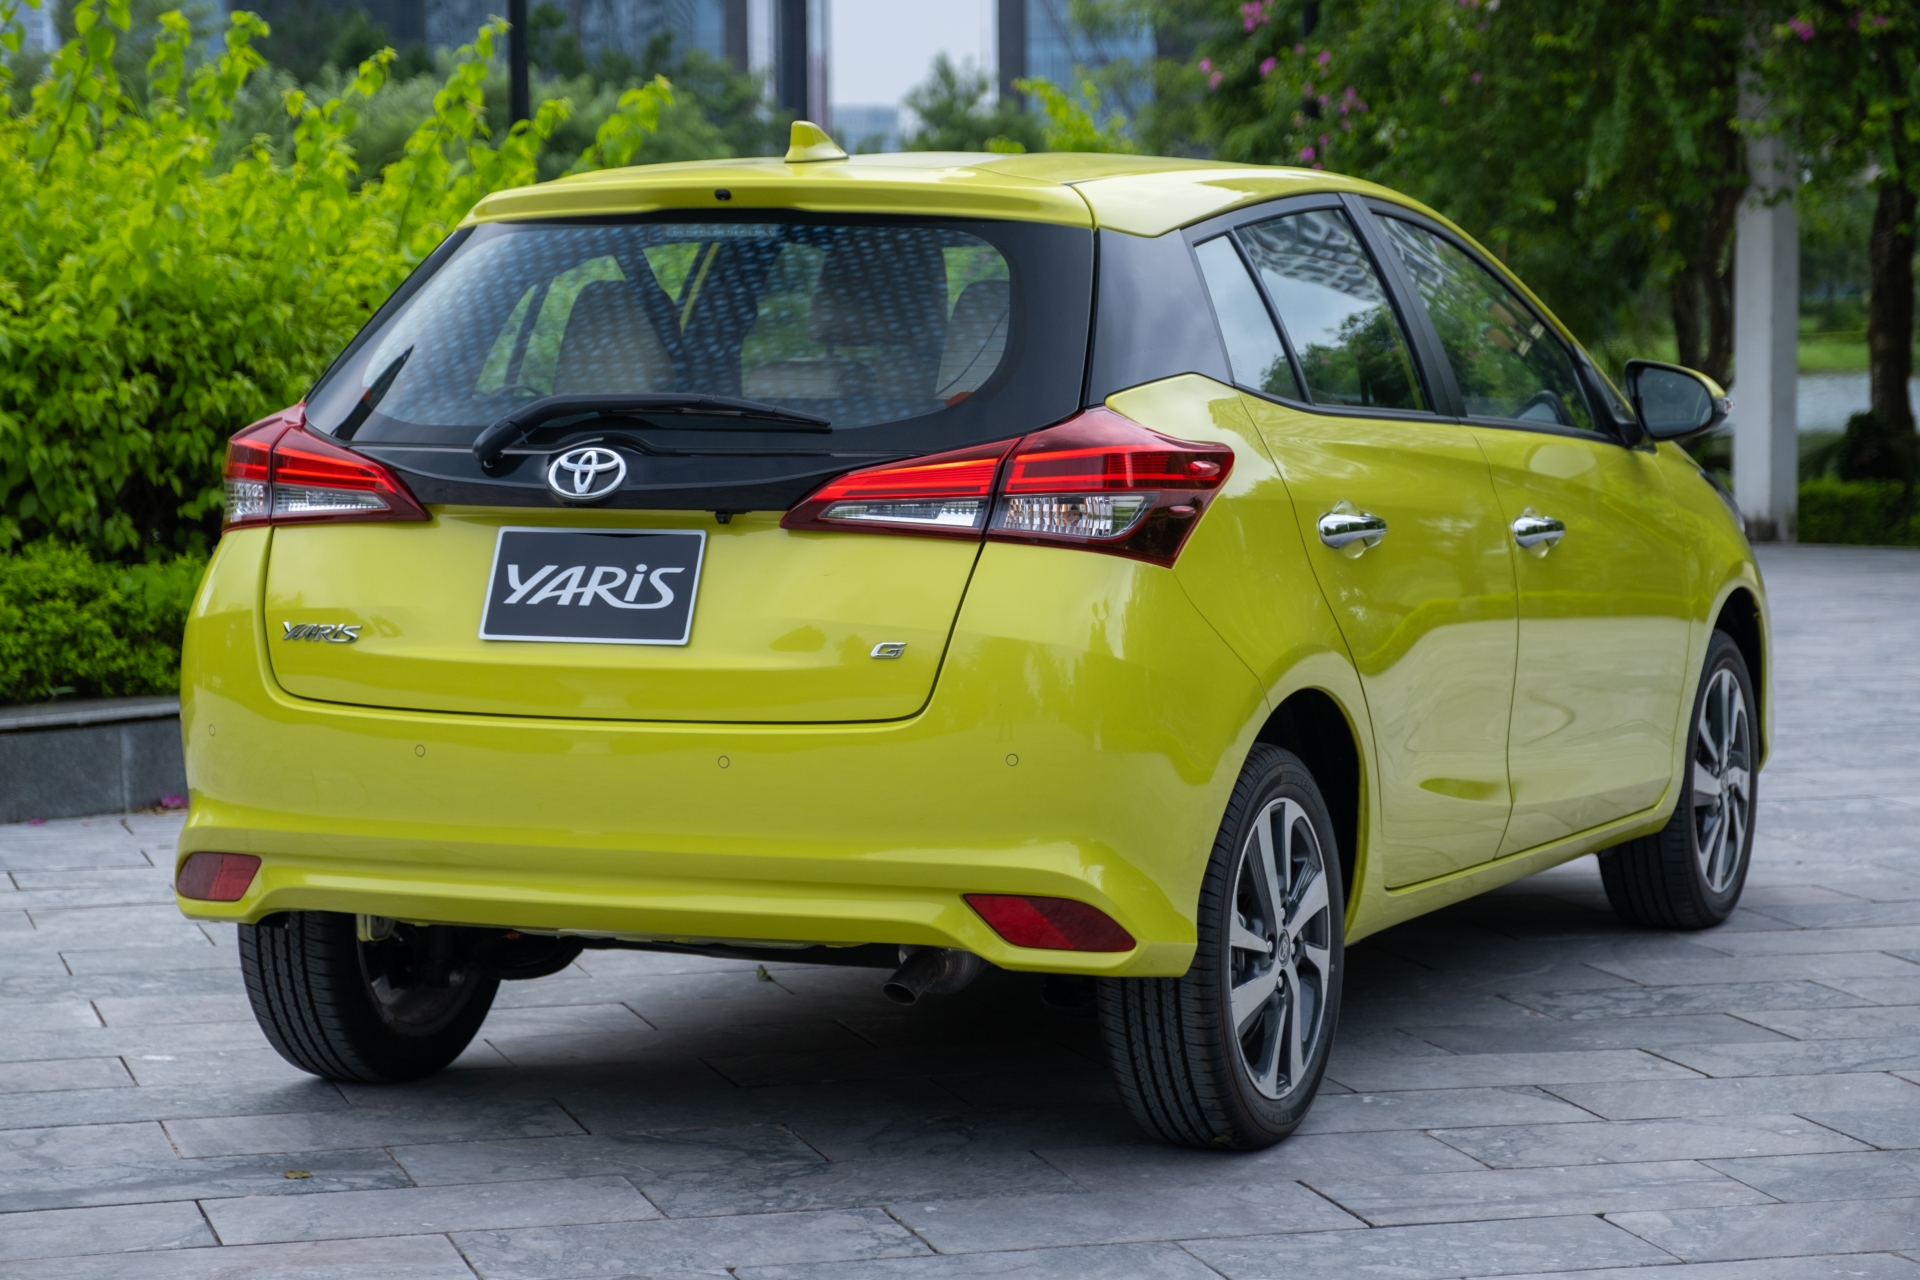 Toyota Yaris sẽ bị khai tử tại Việt Nam?